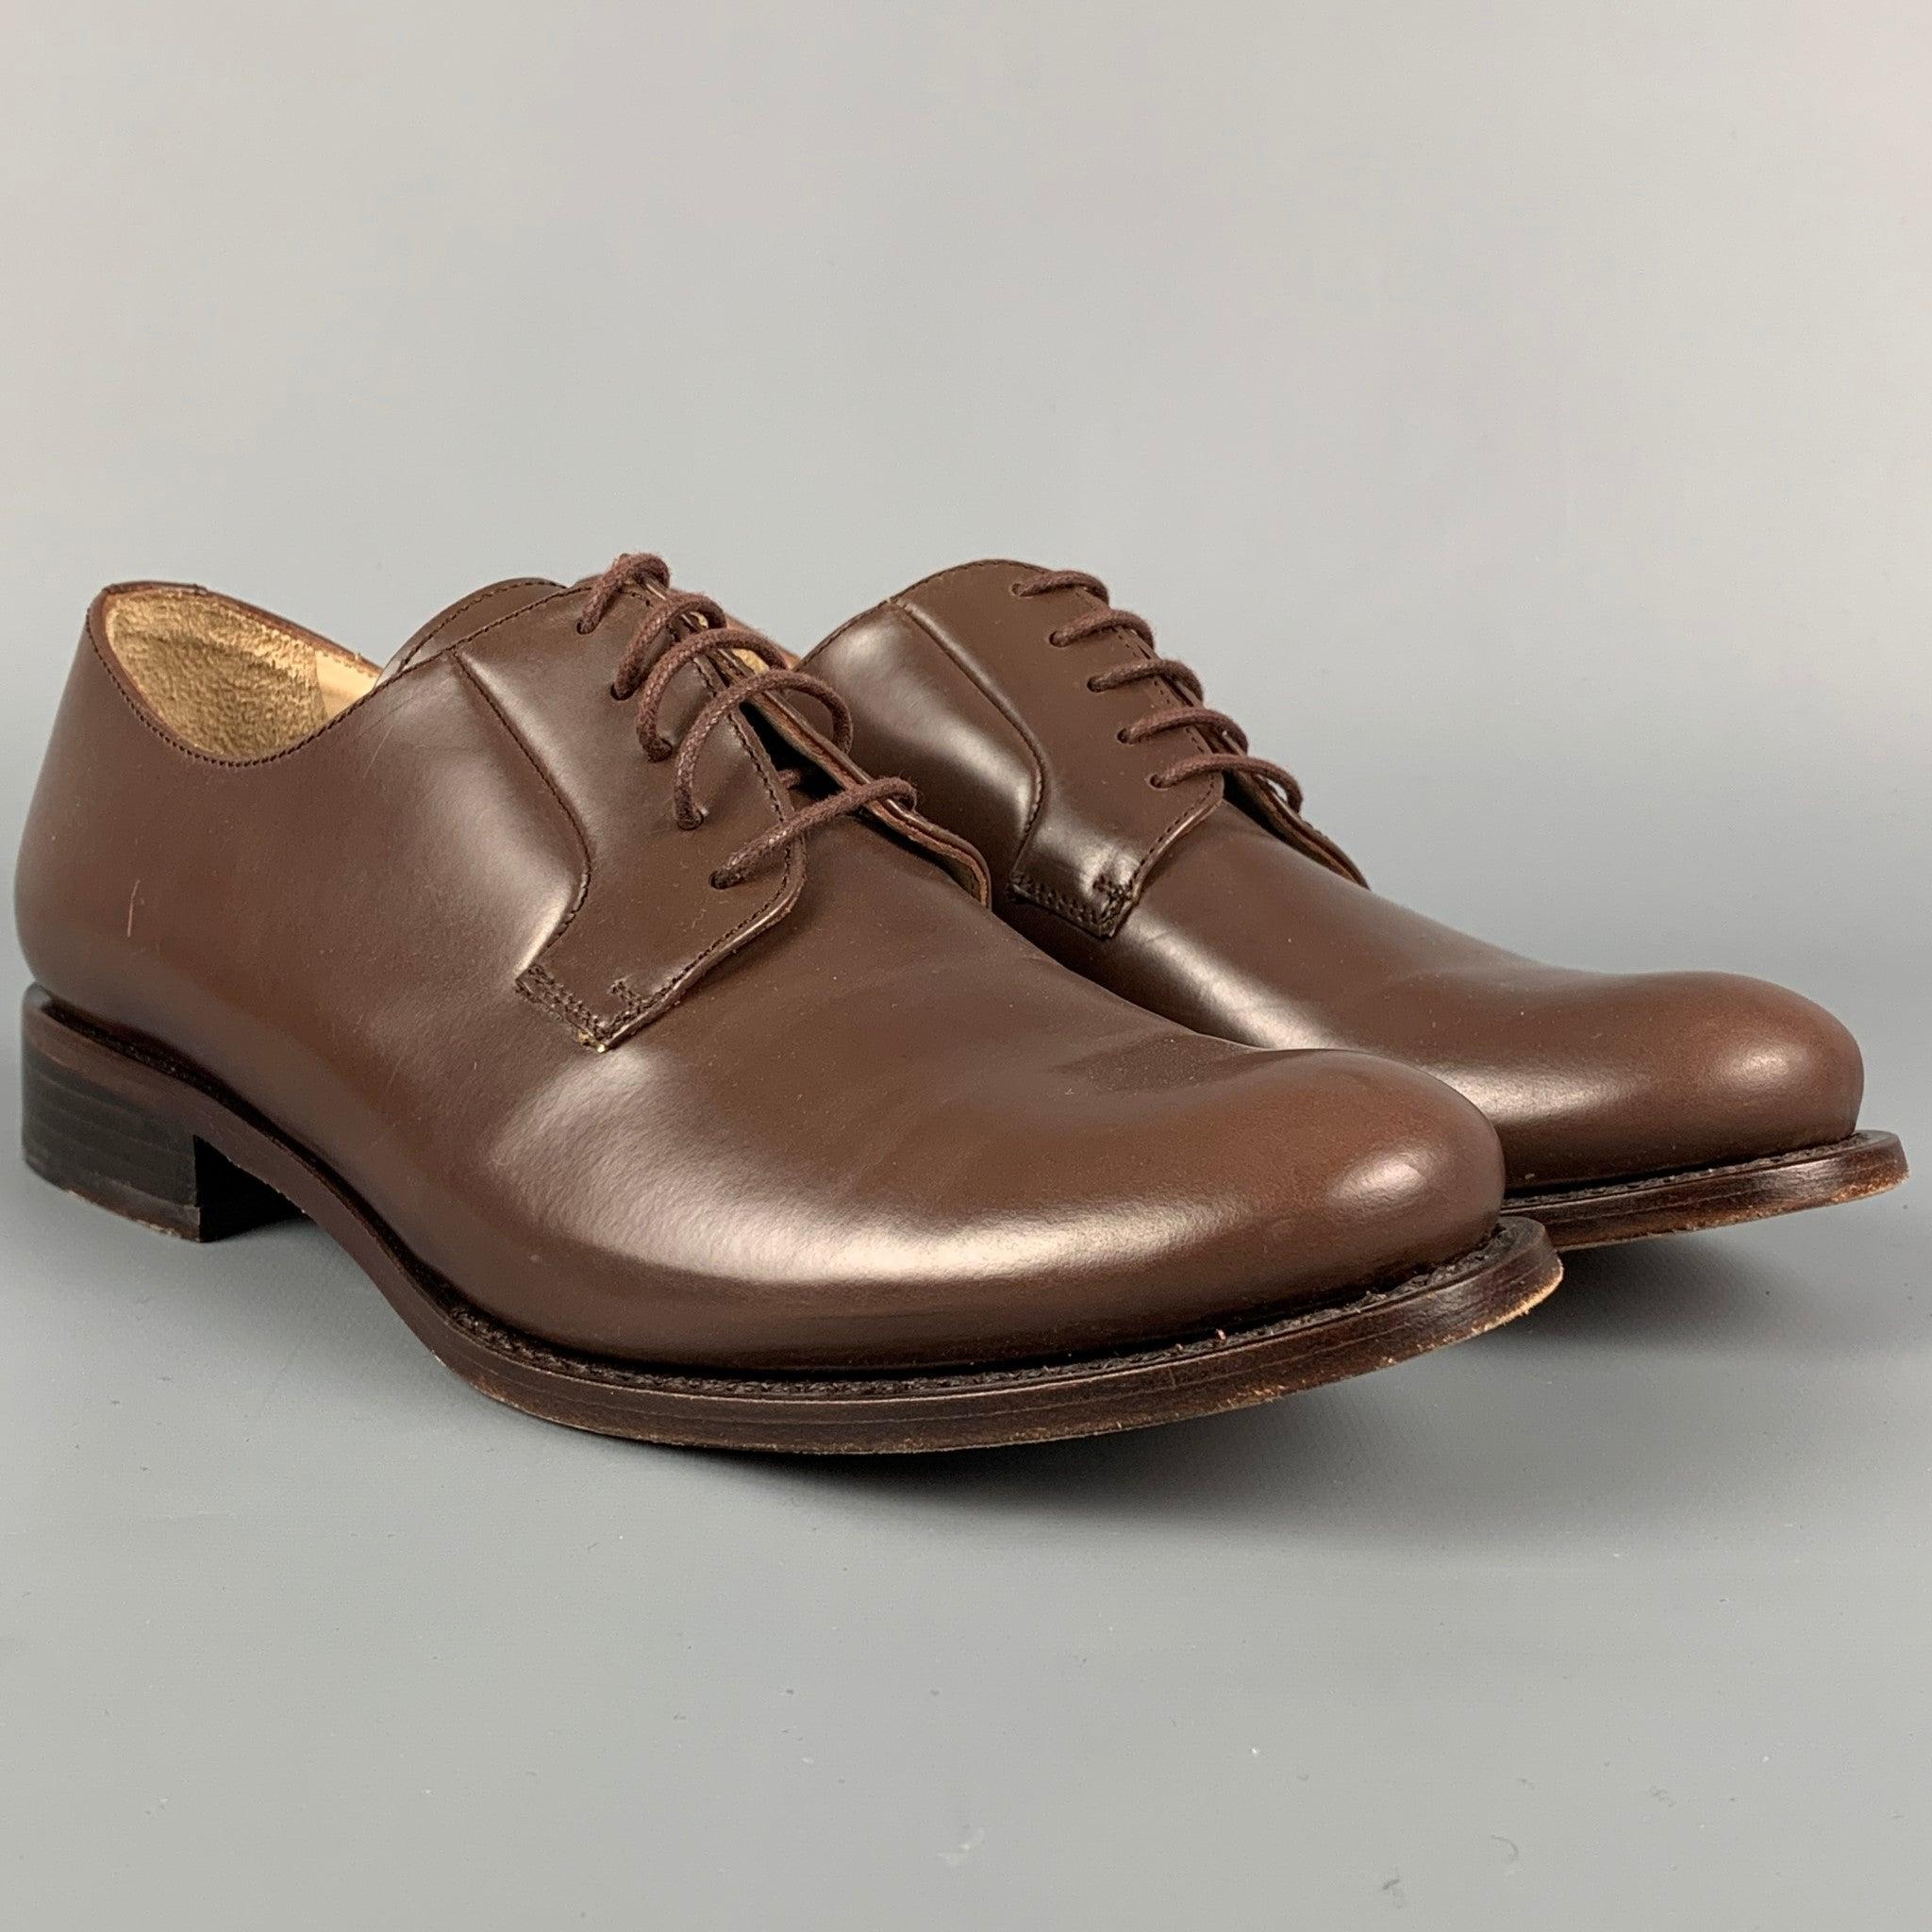 Les chaussures JIL SANDER sont en cuir marron et présentent un talon épais ainsi qu'une fermeture à lacets. Fabriquées en Italie.
Très bien
Etat d'occasion. 

Marqué :   36.5Semelle : 10 pouces  x 3.5 pouces 
  
  
 
Référence : 113028
Catégorie :